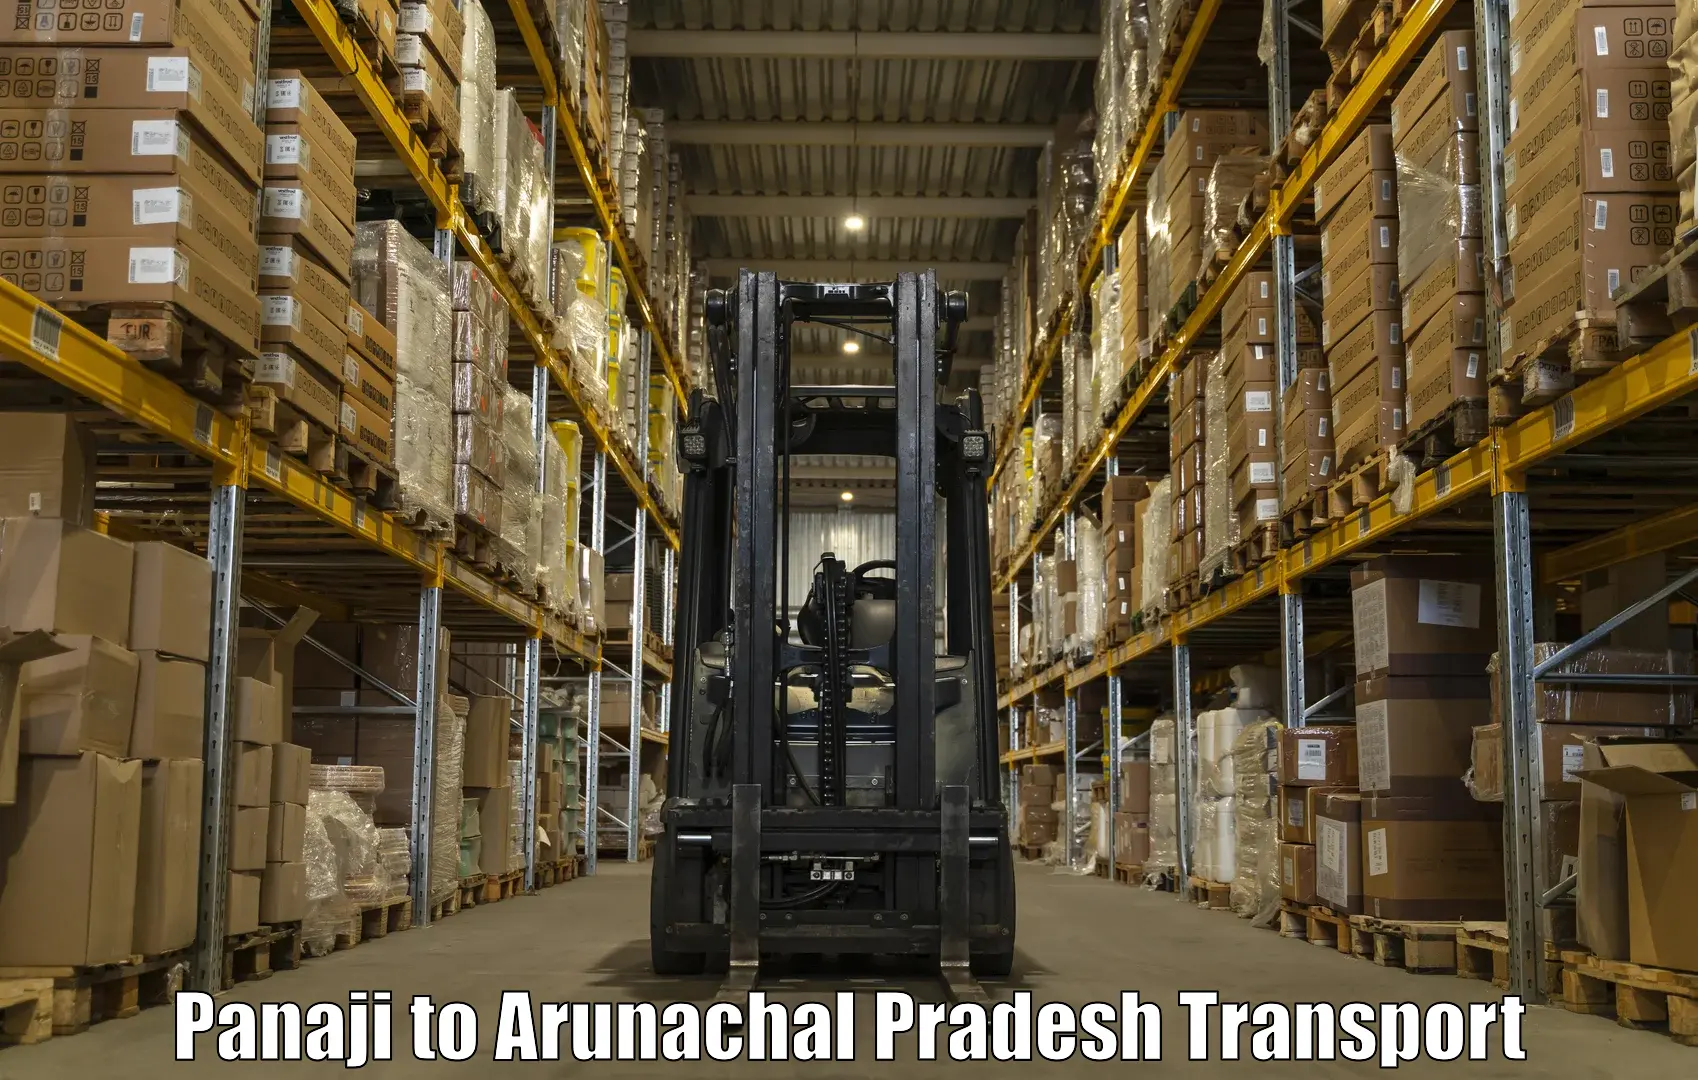 Truck transport companies in India Panaji to Jairampur